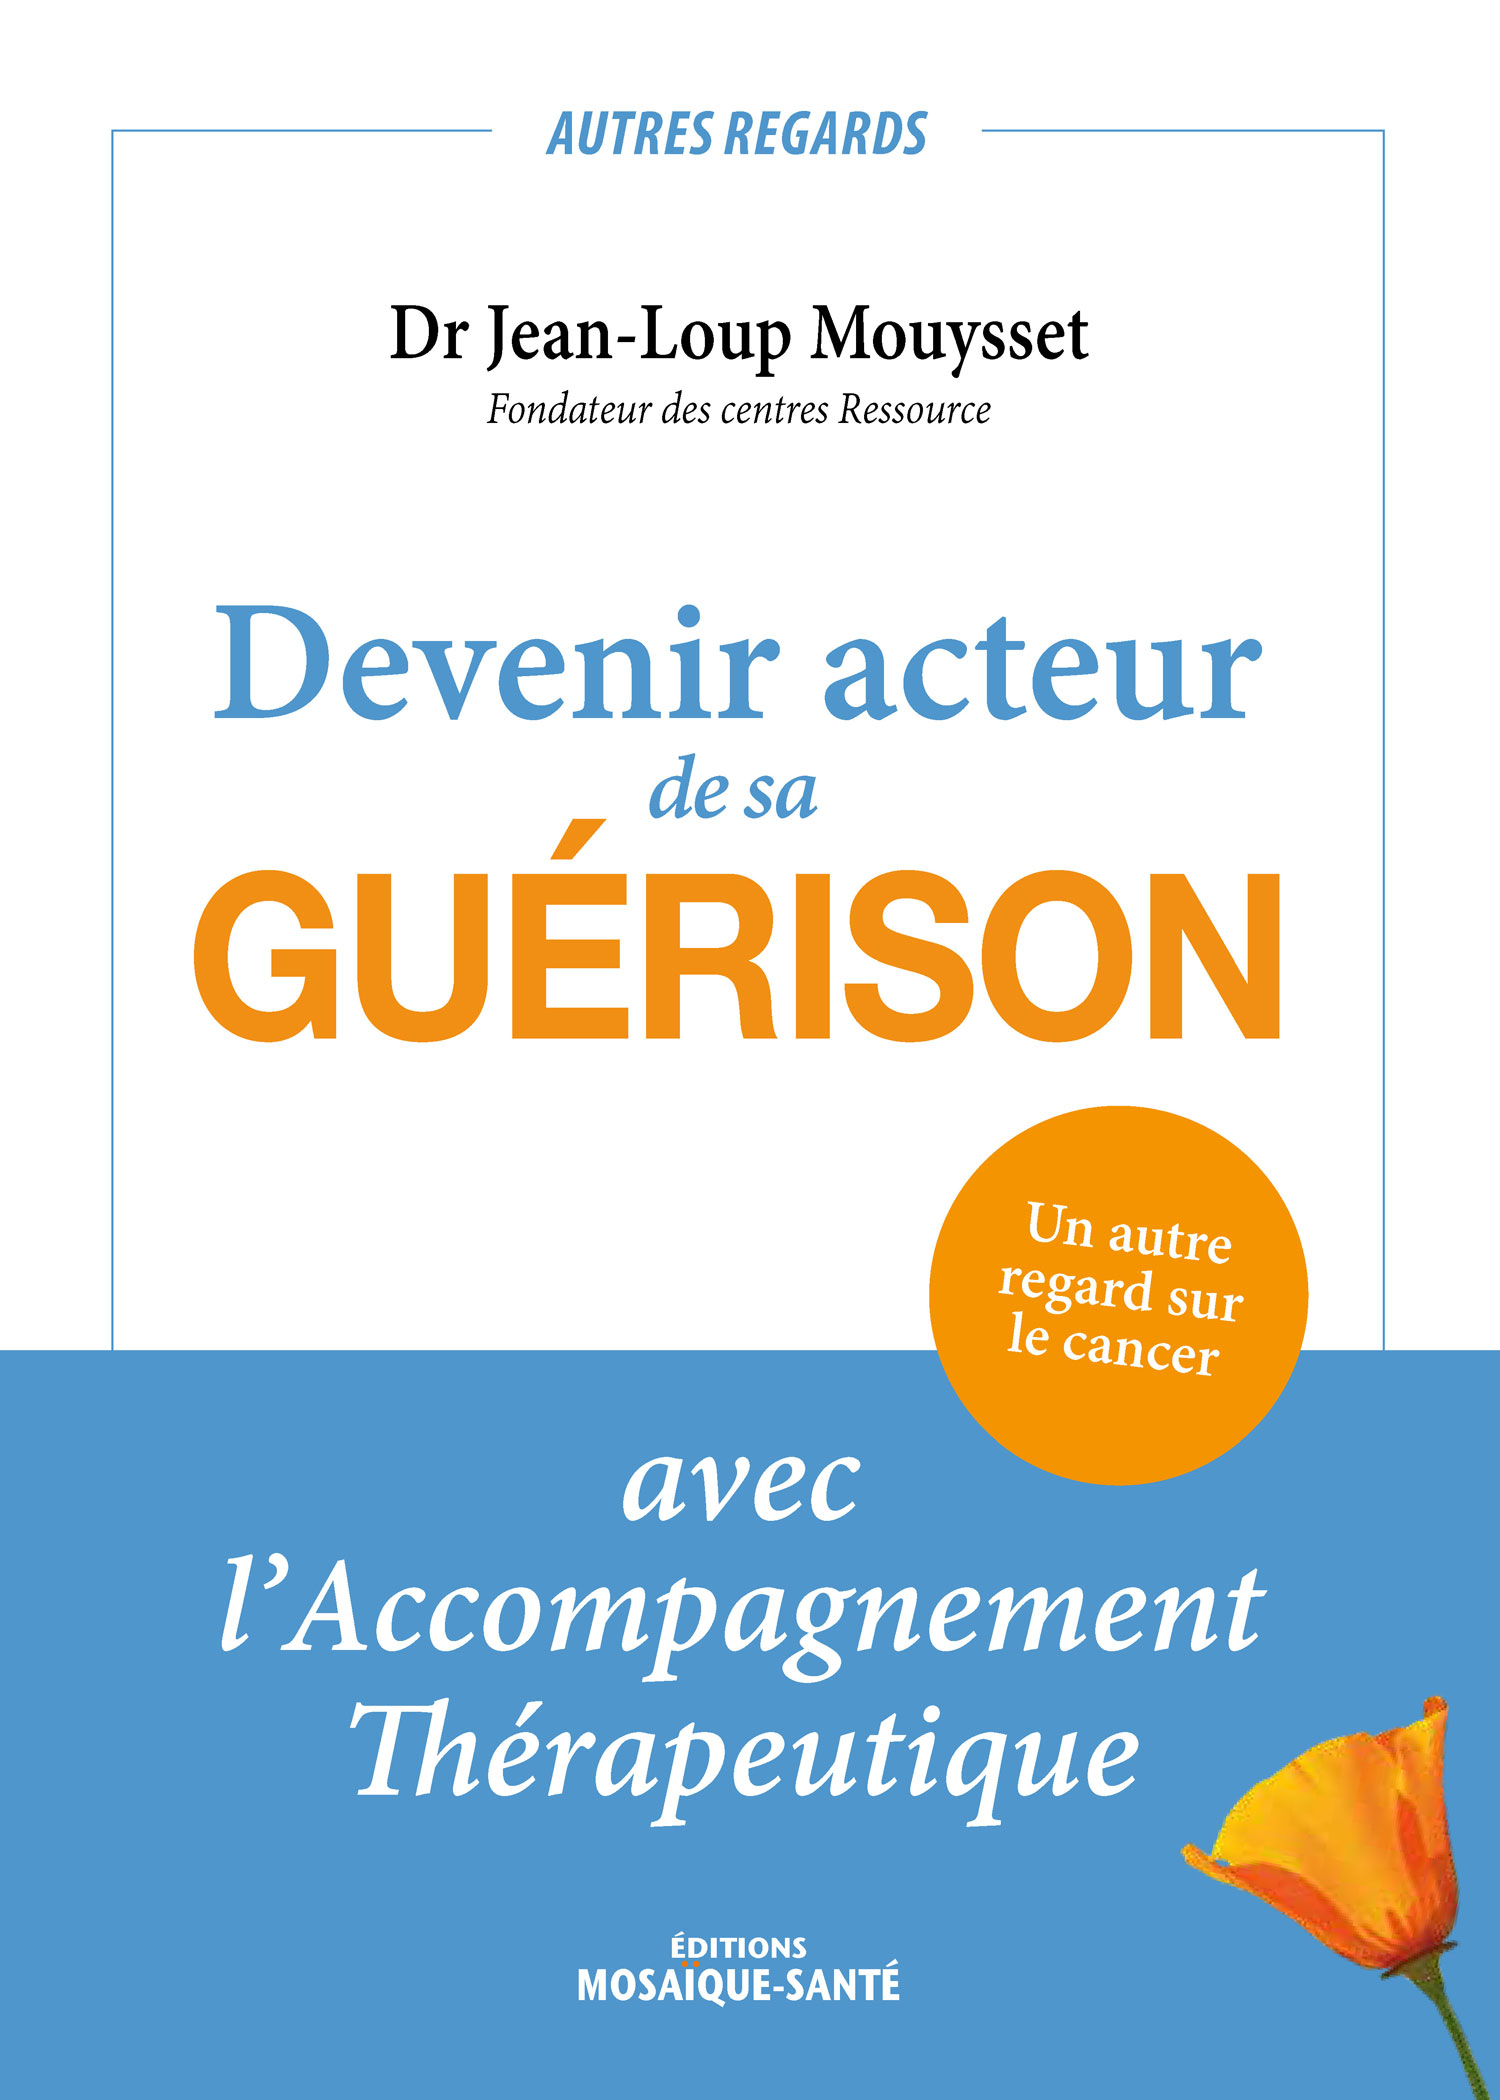 Président et fondateur du premier centre Ressource à Aix-en-Provence en 2011, le Dr Jean-Loup Mouysset est oncologue et a pris le parti de soigner des malades et non des maladies, afin de « remettre l’humain au cœur des soins ».